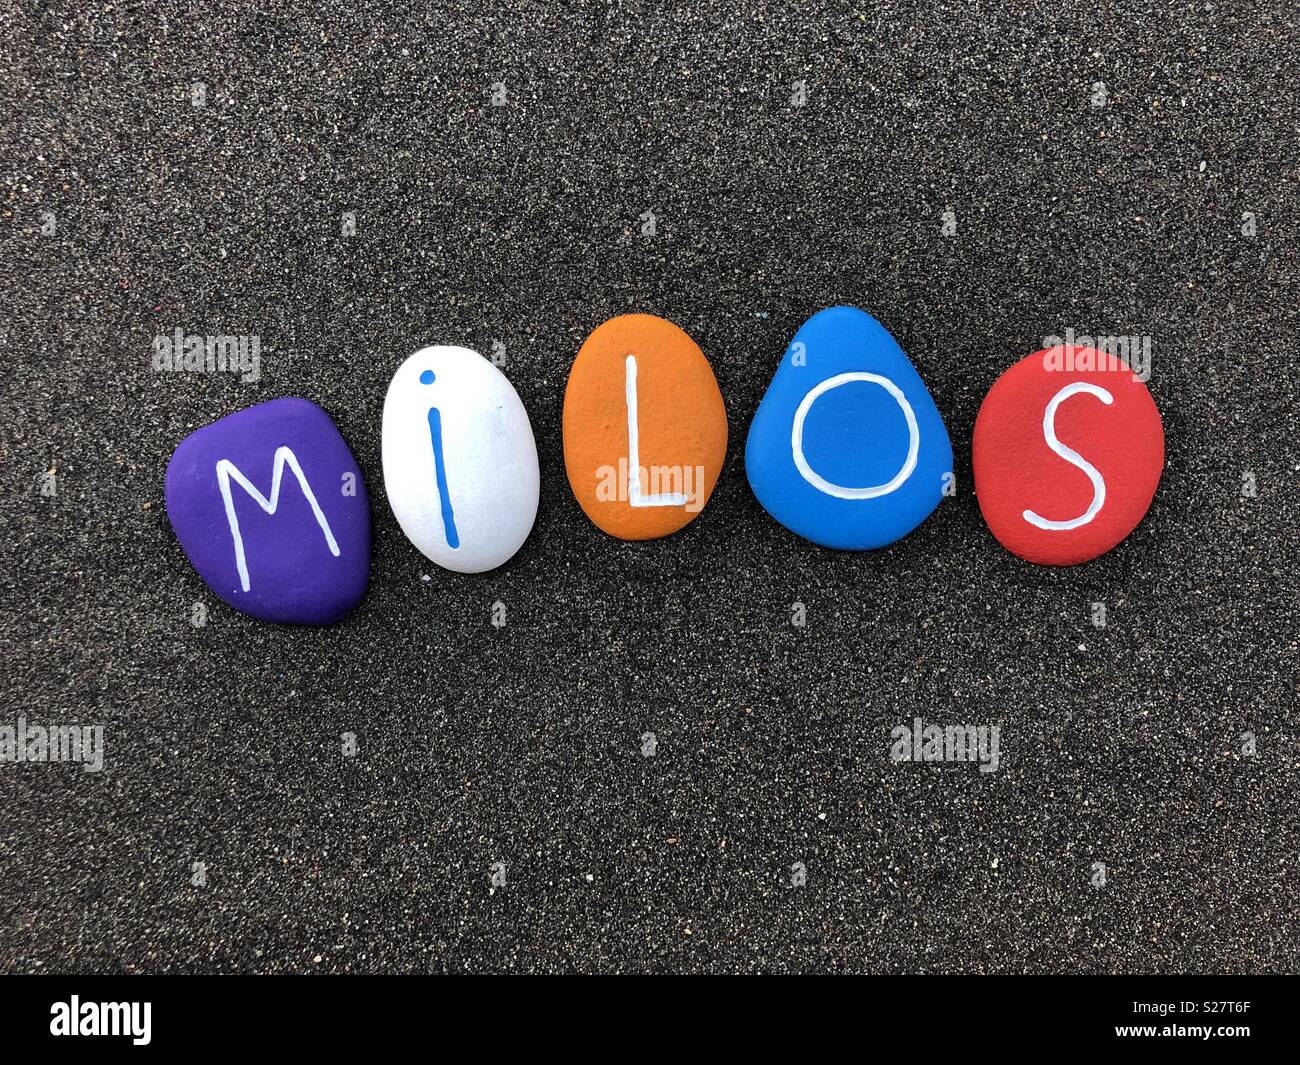 Milos, männliche Vornamen mit mehrfarbig lackiert Stein Briefe über schwarzen vulkanischen Sand Stockfoto